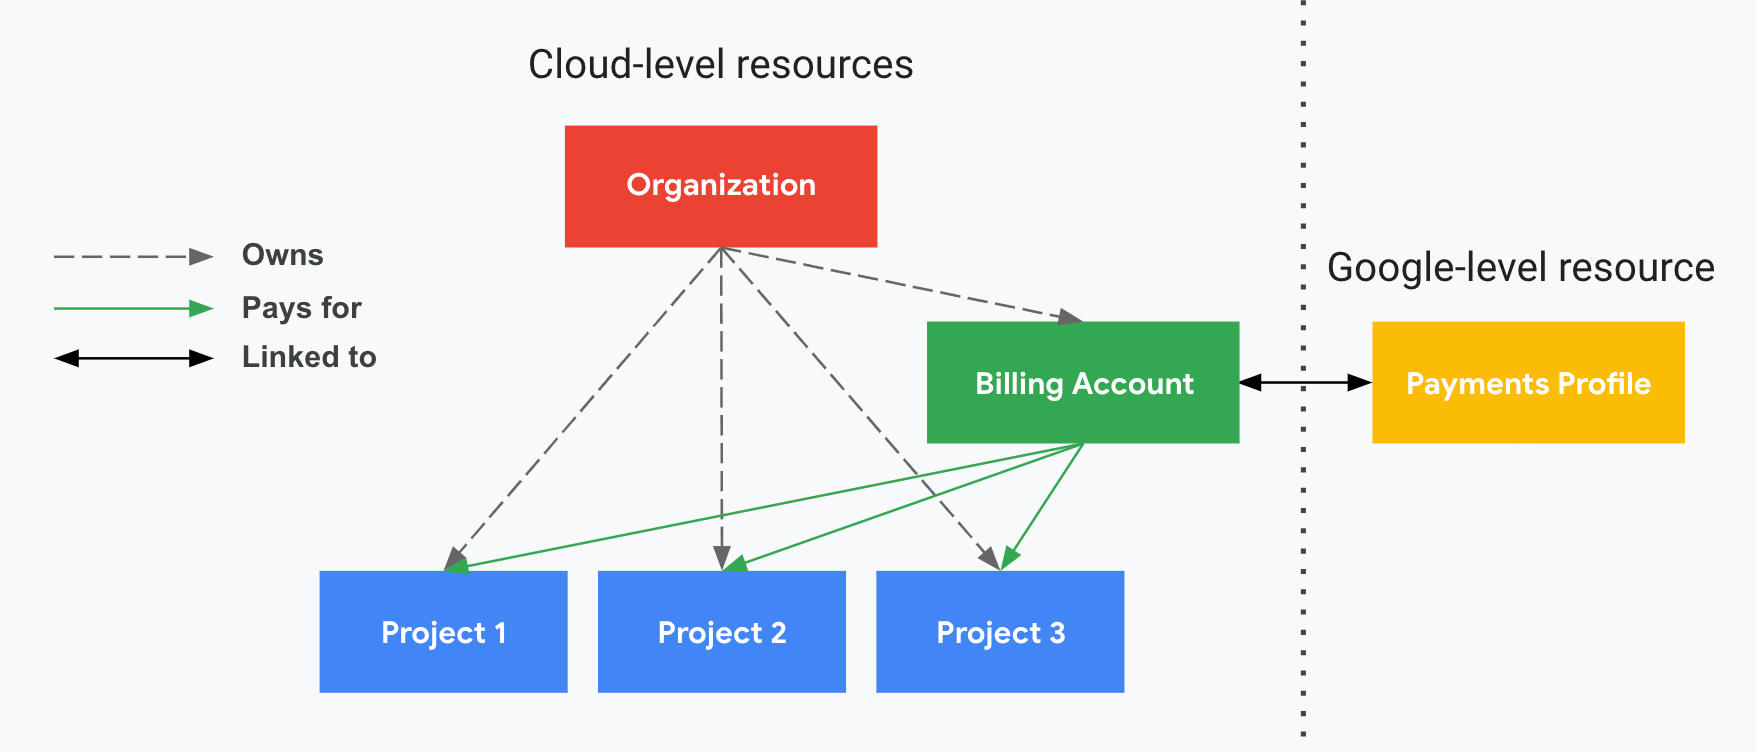 Illustre la relation entre les projets, votre compte de facturation Cloud et l&#39;organisation, ainsi que votre profil de paiement Google. Un côté affiche vos ressources au niveau du cloud (organisation, compte de facturation Cloud et projets associés) et l&#39;autre, divisé par une ligne pointillée verticale, affiche votre ressource Google (profil de paiement). Les paiements de vos projets sont assurés par votre compte de facturation Cloud, qui est associé à un profil de paiement Google. L&#39;organisation contrôle la propriété du compte de facturation Cloud à l&#39;aide d&#39;IAM.